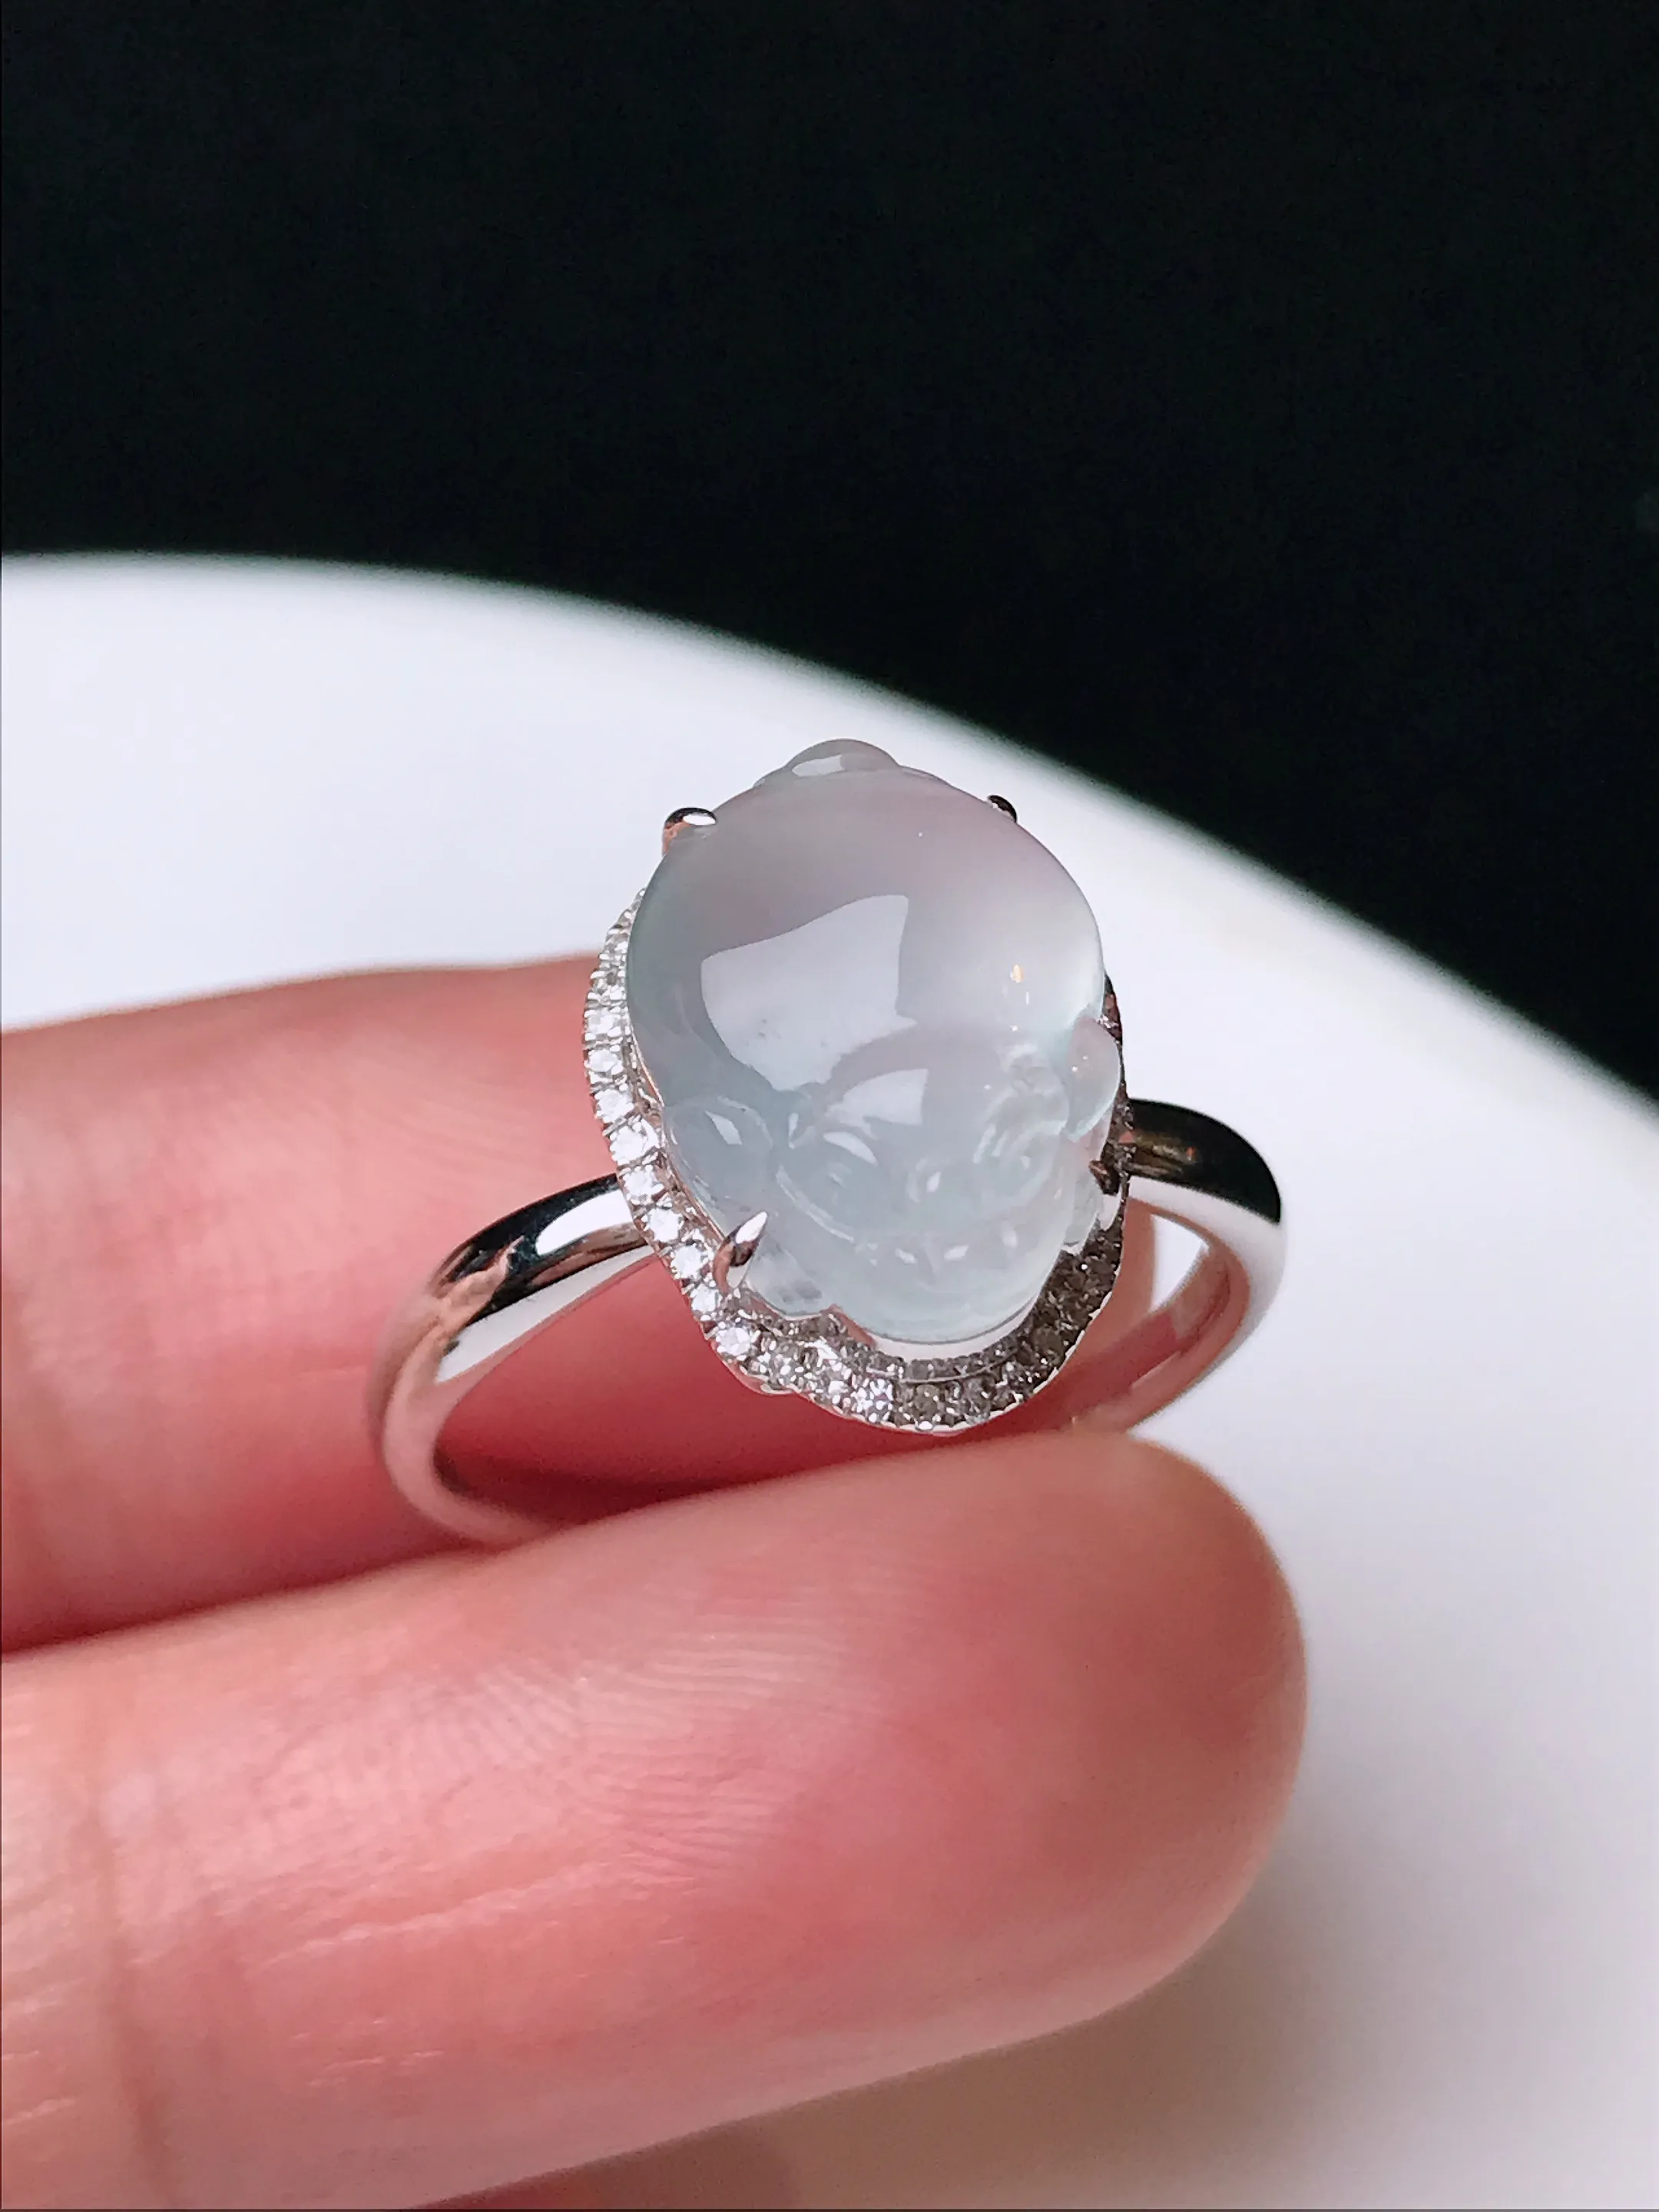 严选推荐戒指，老坑冰种貔貅戒指，18k金钻镶嵌而成，设计新颖独特，品相佳，佩戴效果出众，尽显气